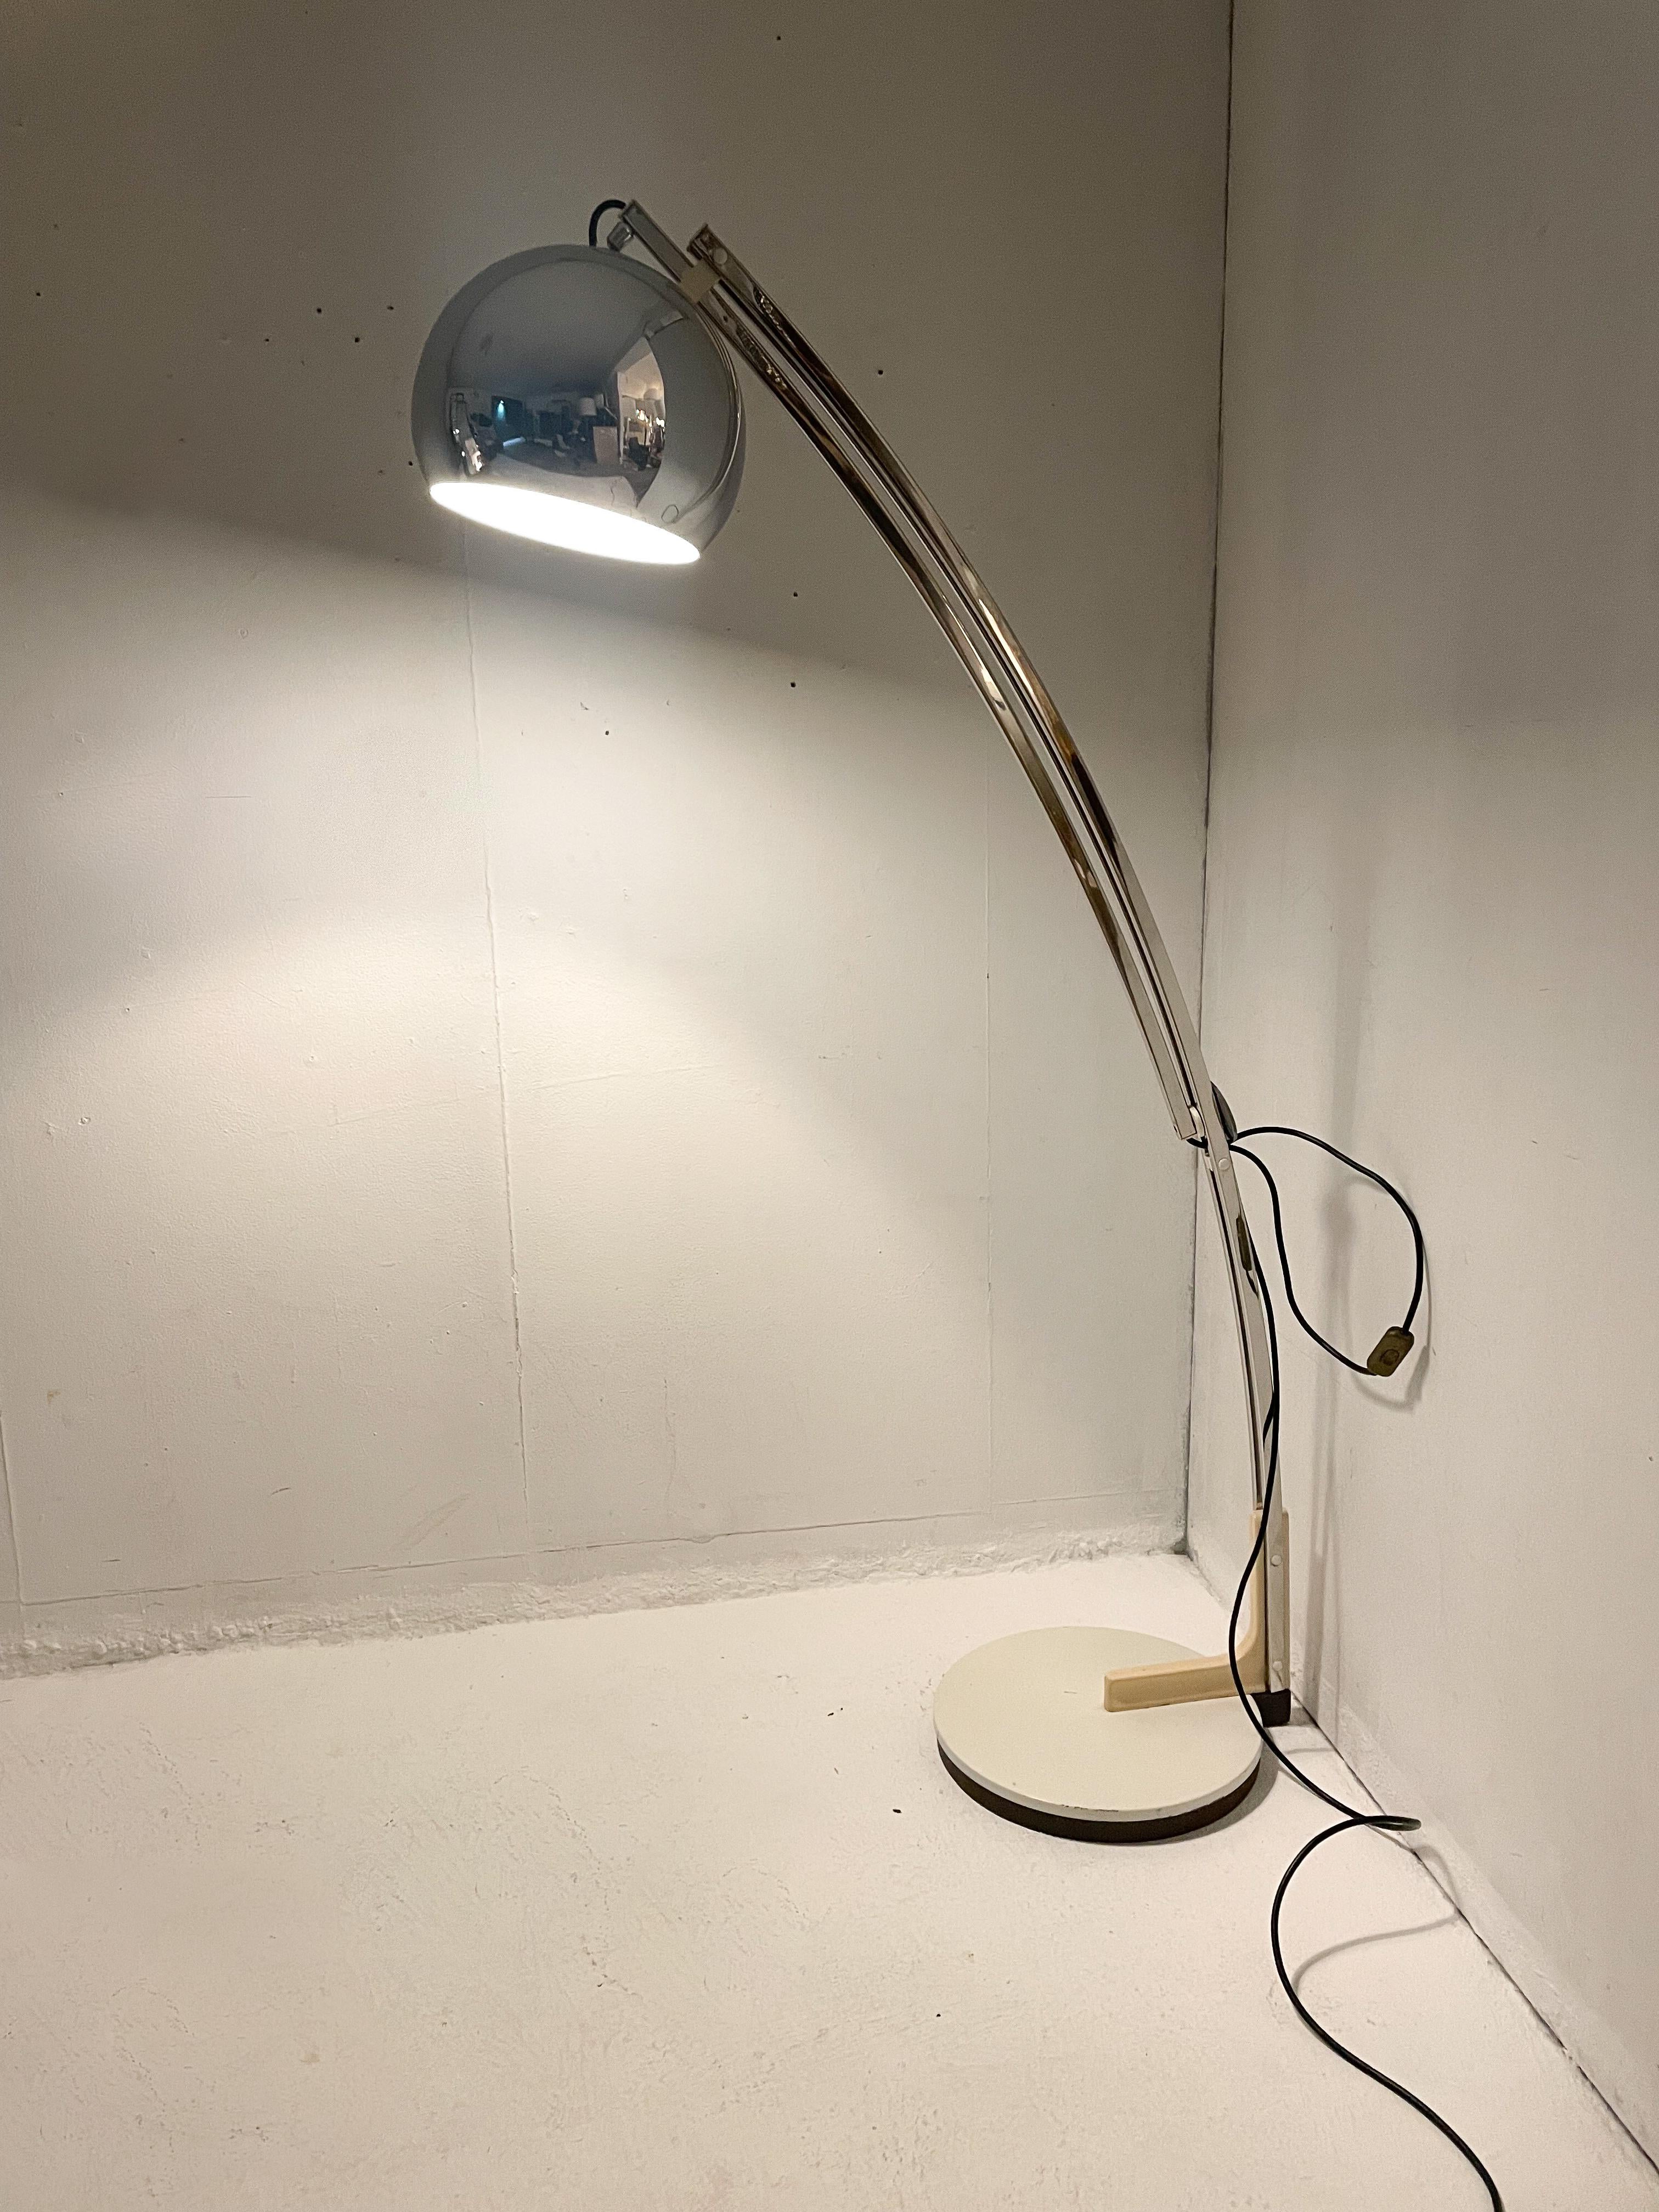 Italian Modular Arc floor lamp, 1980s

Size : 
W 86 - 163 cm

H 185- 155 cm.